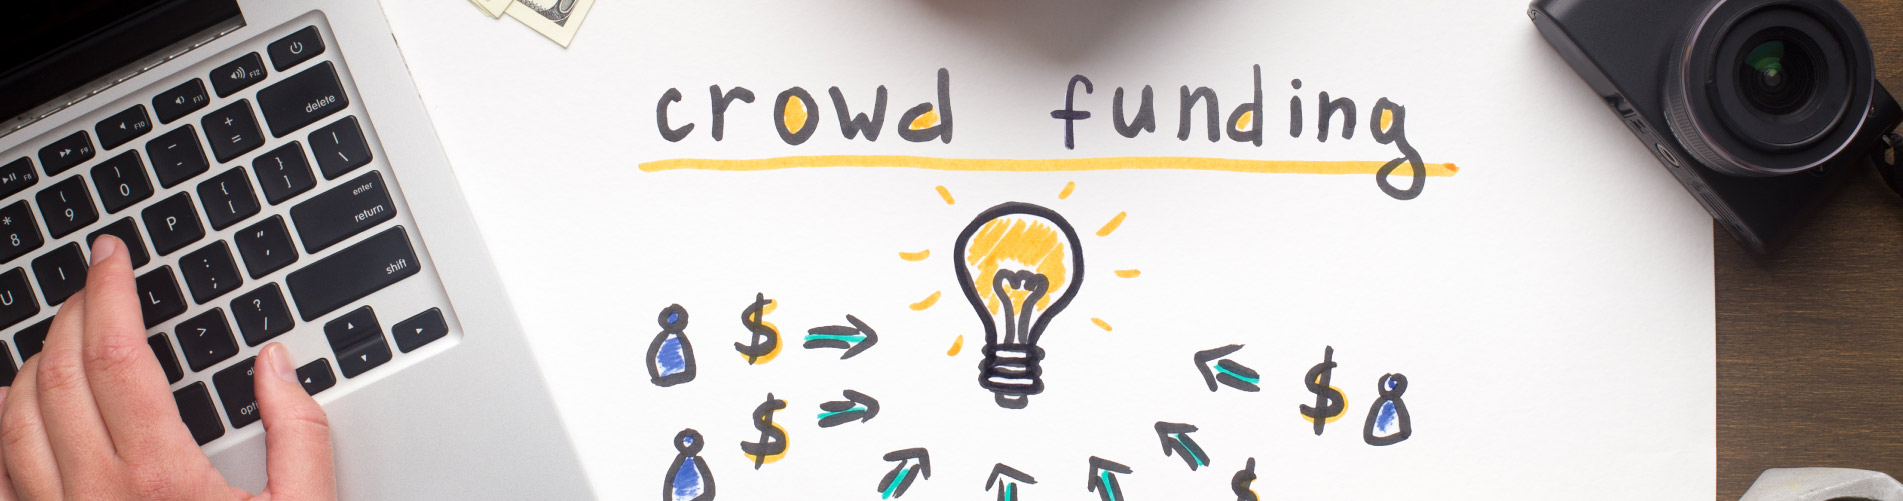 que-es-el-crowdfunding-y-como-te-puede-ayudar-a-empezar-tu-empresa-social